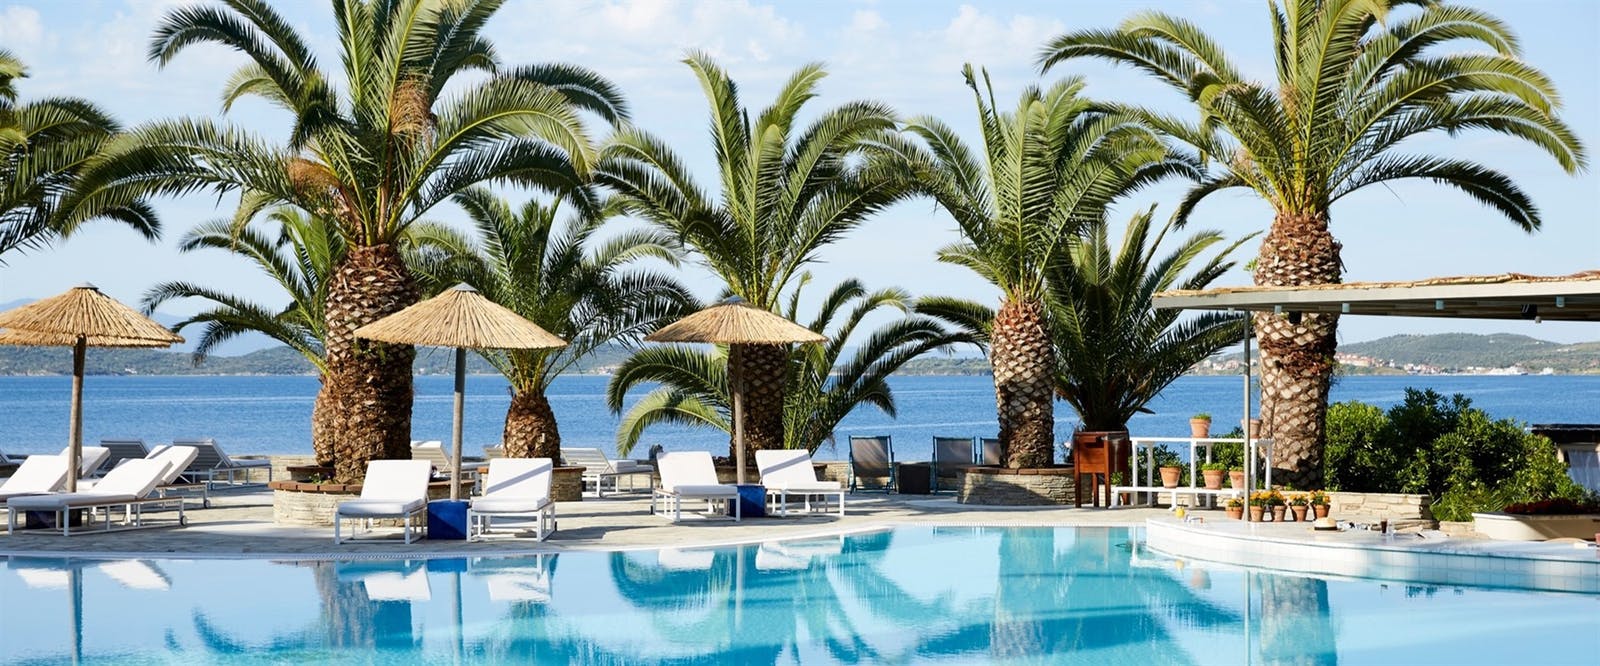 5 нощувки със закуски и вечери в луксозния хотел Eagles Palace 5*, Халкидики, Гърция през Май!